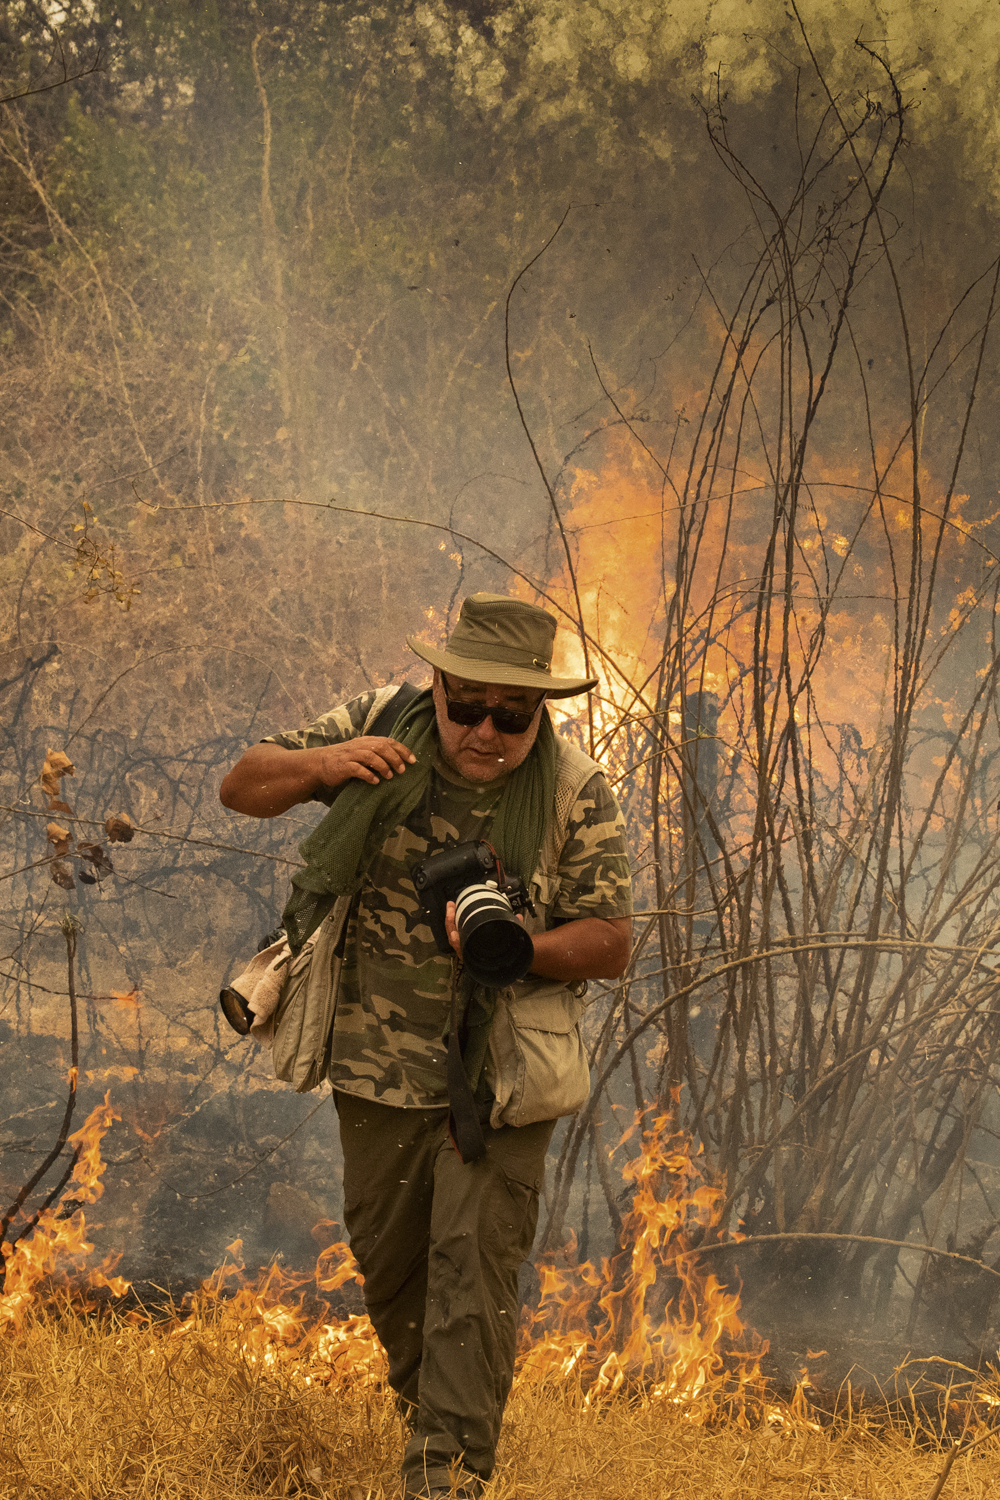 EM AÇÃO - Araquém no Pantanal em chamas, em 2020: explorador do país -